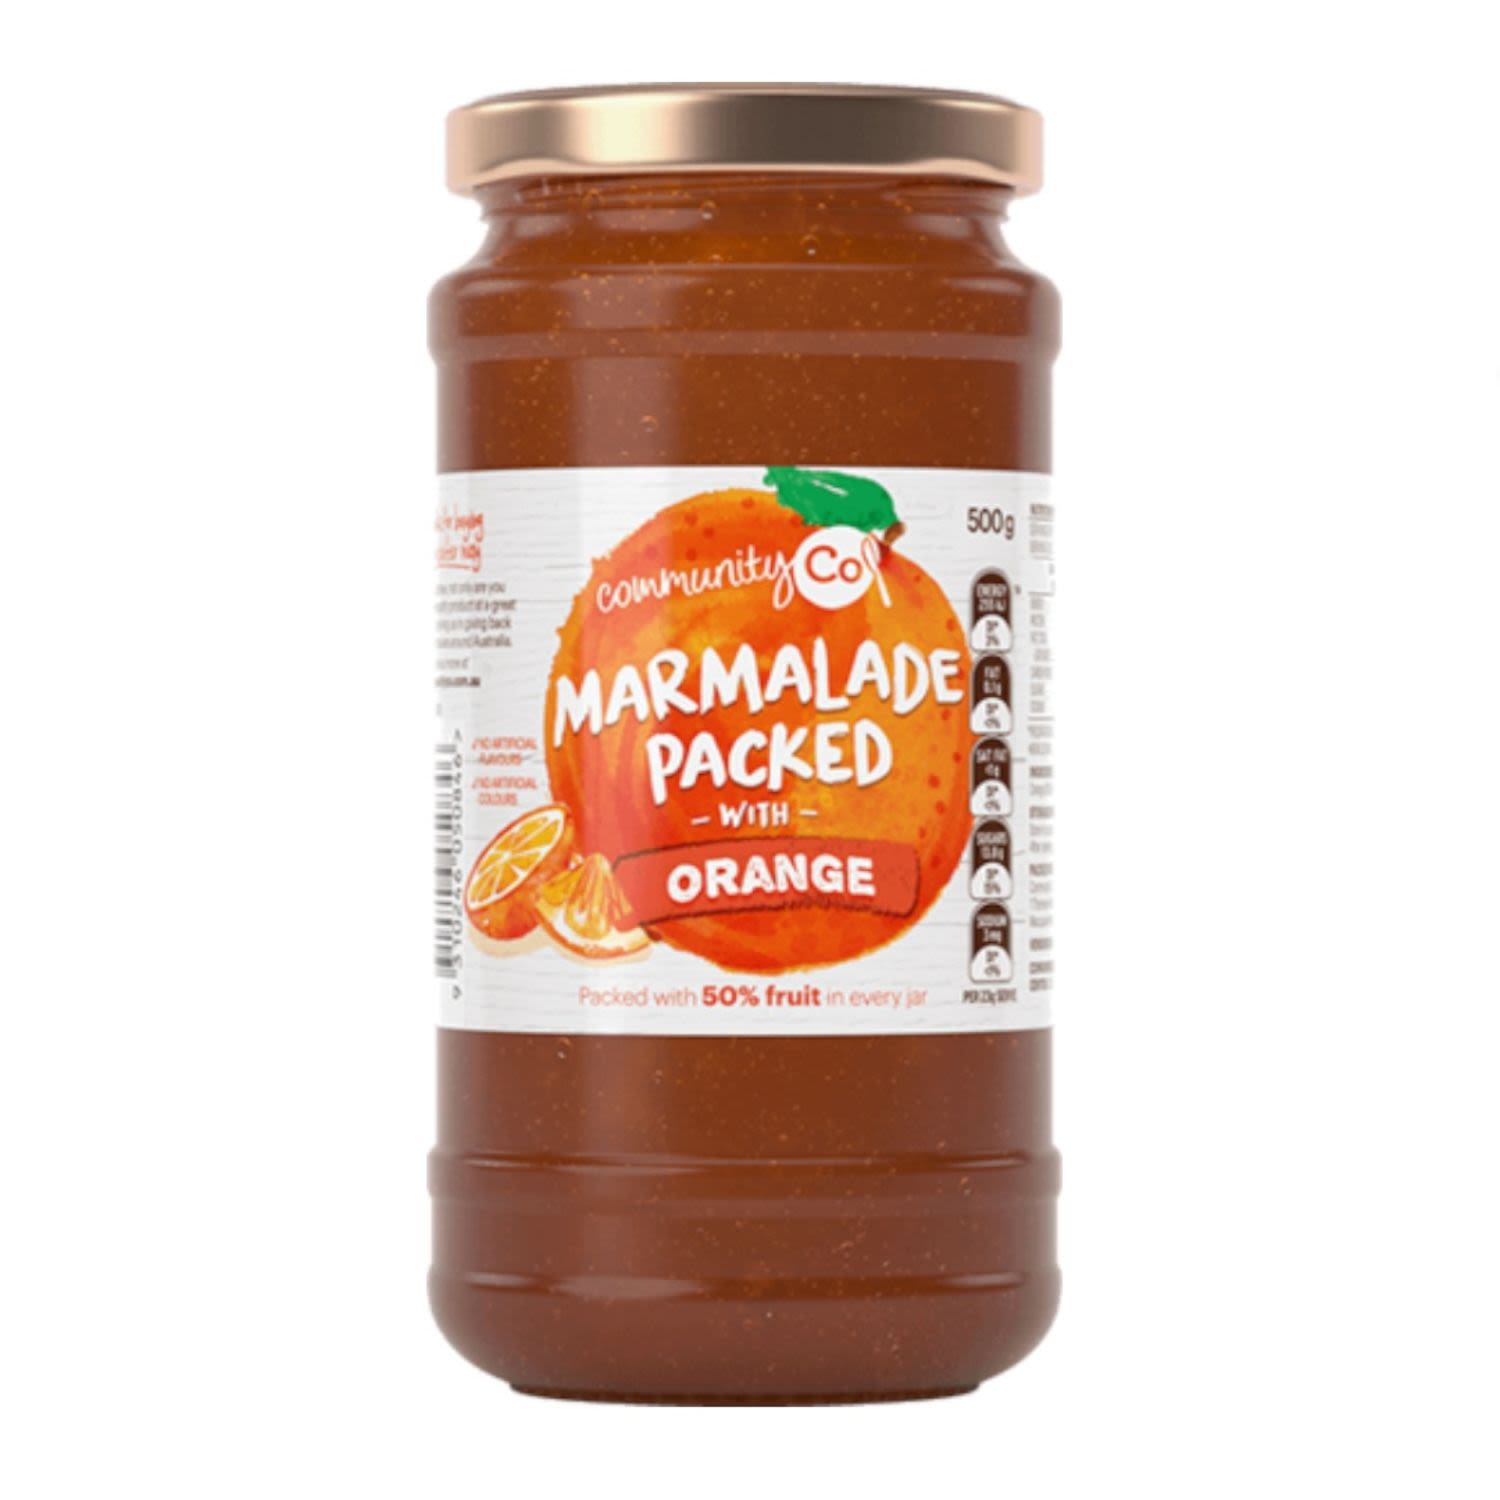 Community Co Original Marmalade, 500 Gram